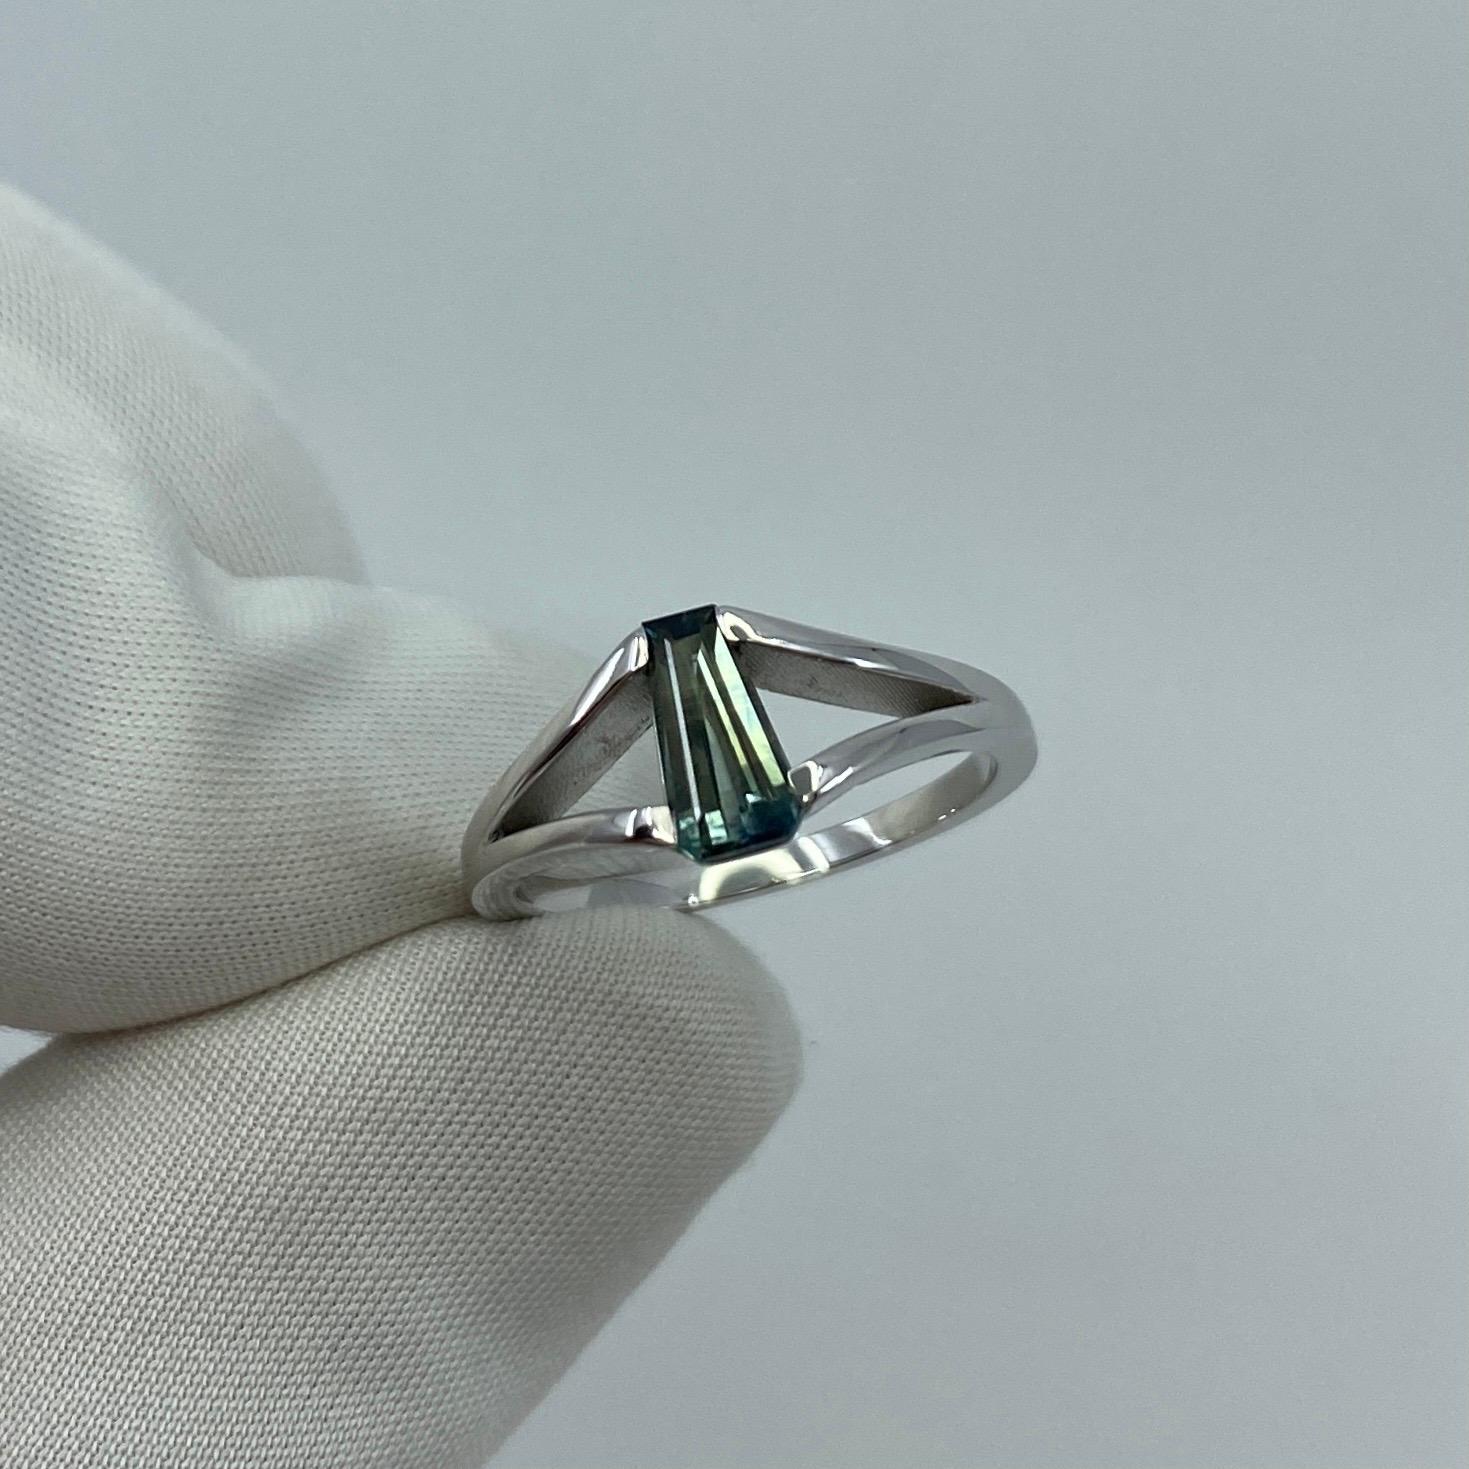 ITSIT Entworfener natürlicher zweifarbiger australischer Saphir 18k Weißgold Solitär Ring.

Einzigartiger australischer Saphir von 0,87 Karat mit einem atemberaubenden grün-blauen Bicolor-Effekt. Hat ausgezeichnete Klarheit, sehr sauber Stein mit